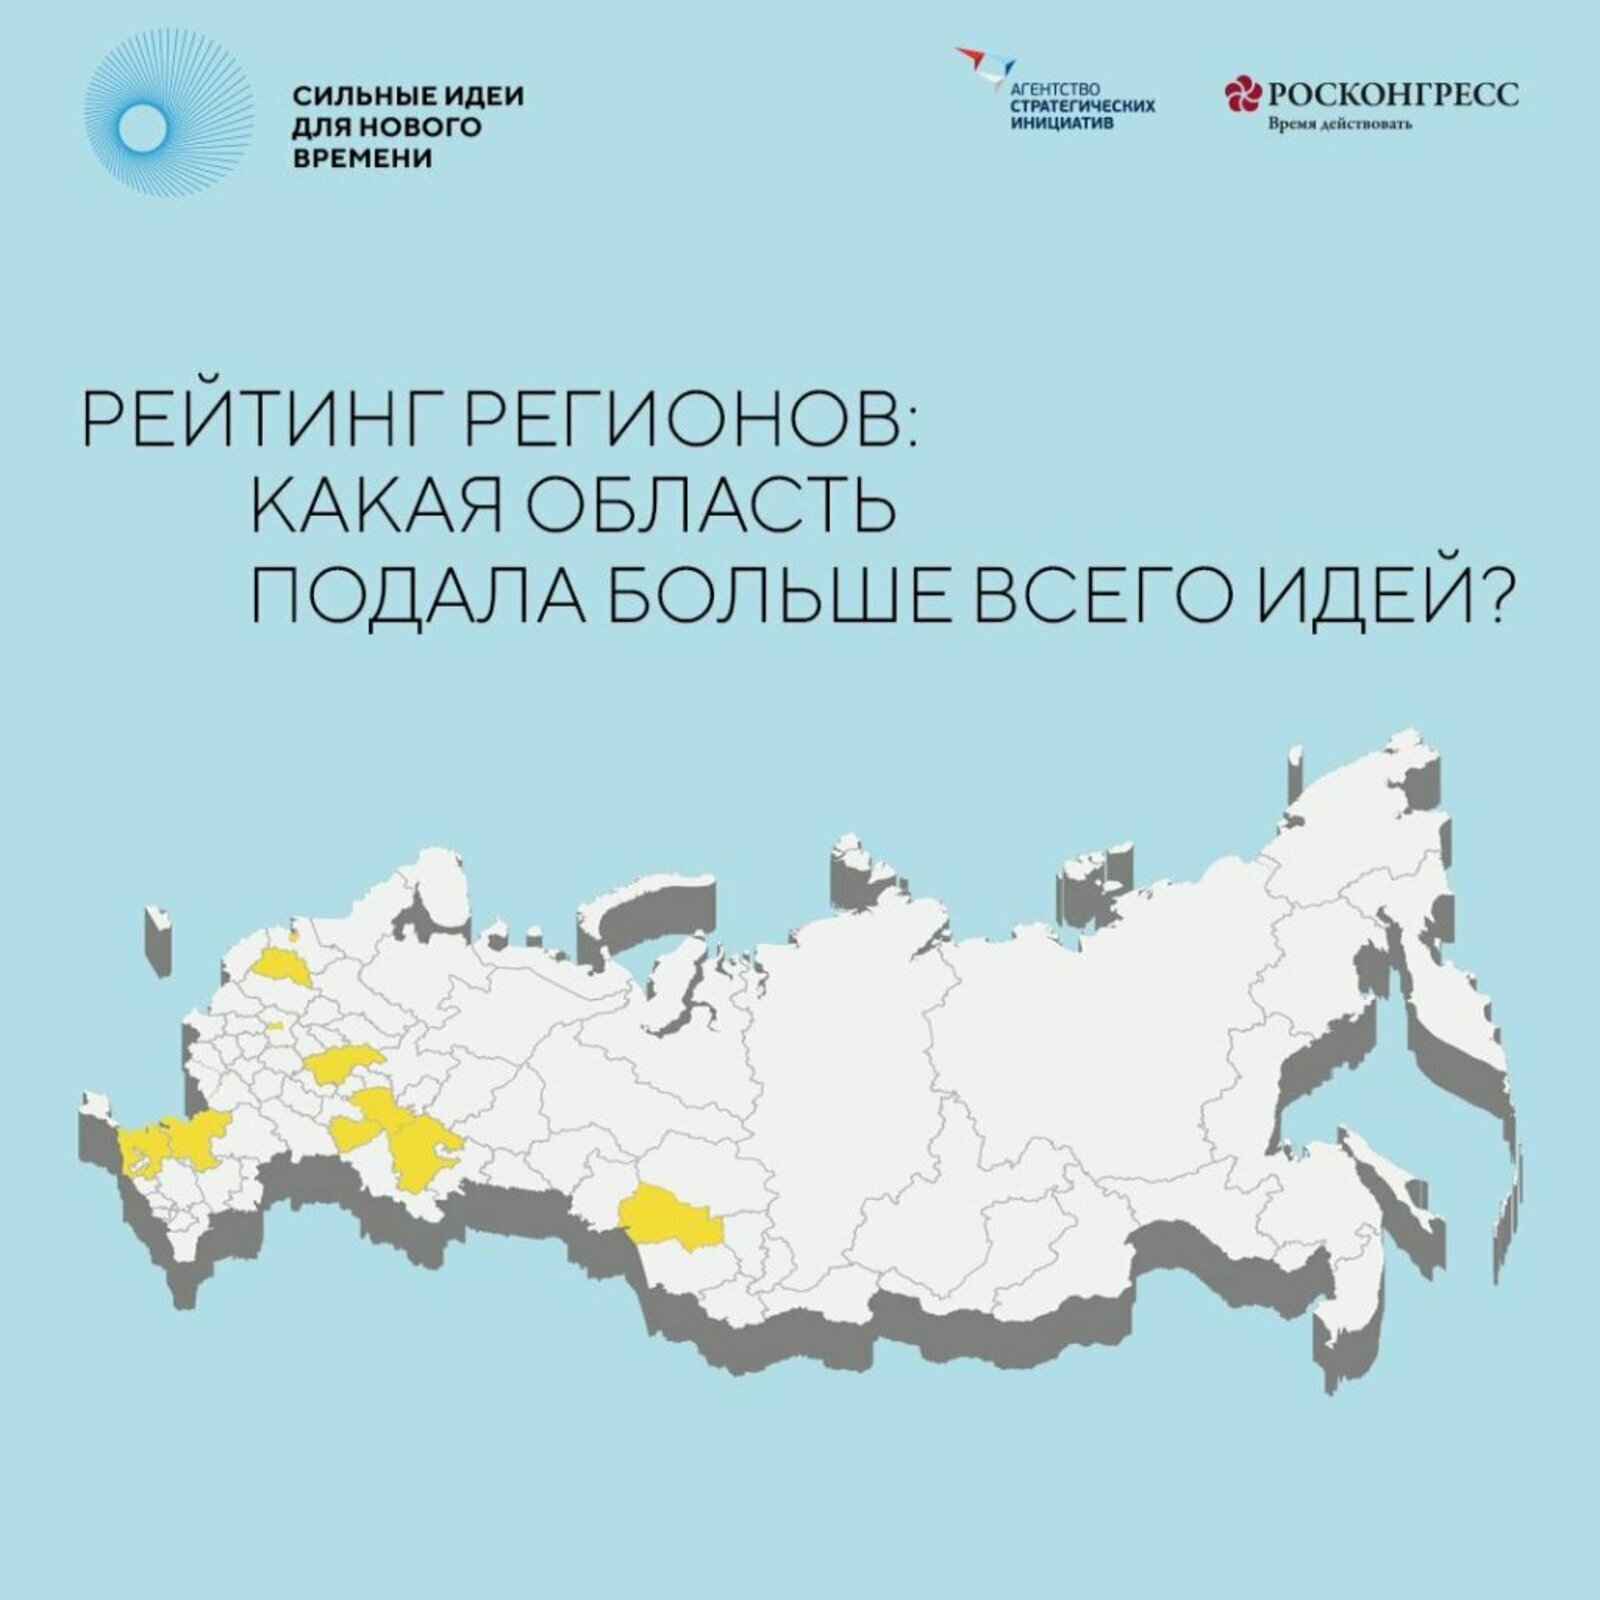 Башкортостан вошел в топ-5 самых активных регионов-участников форума «Сильные идеи для нового времени»